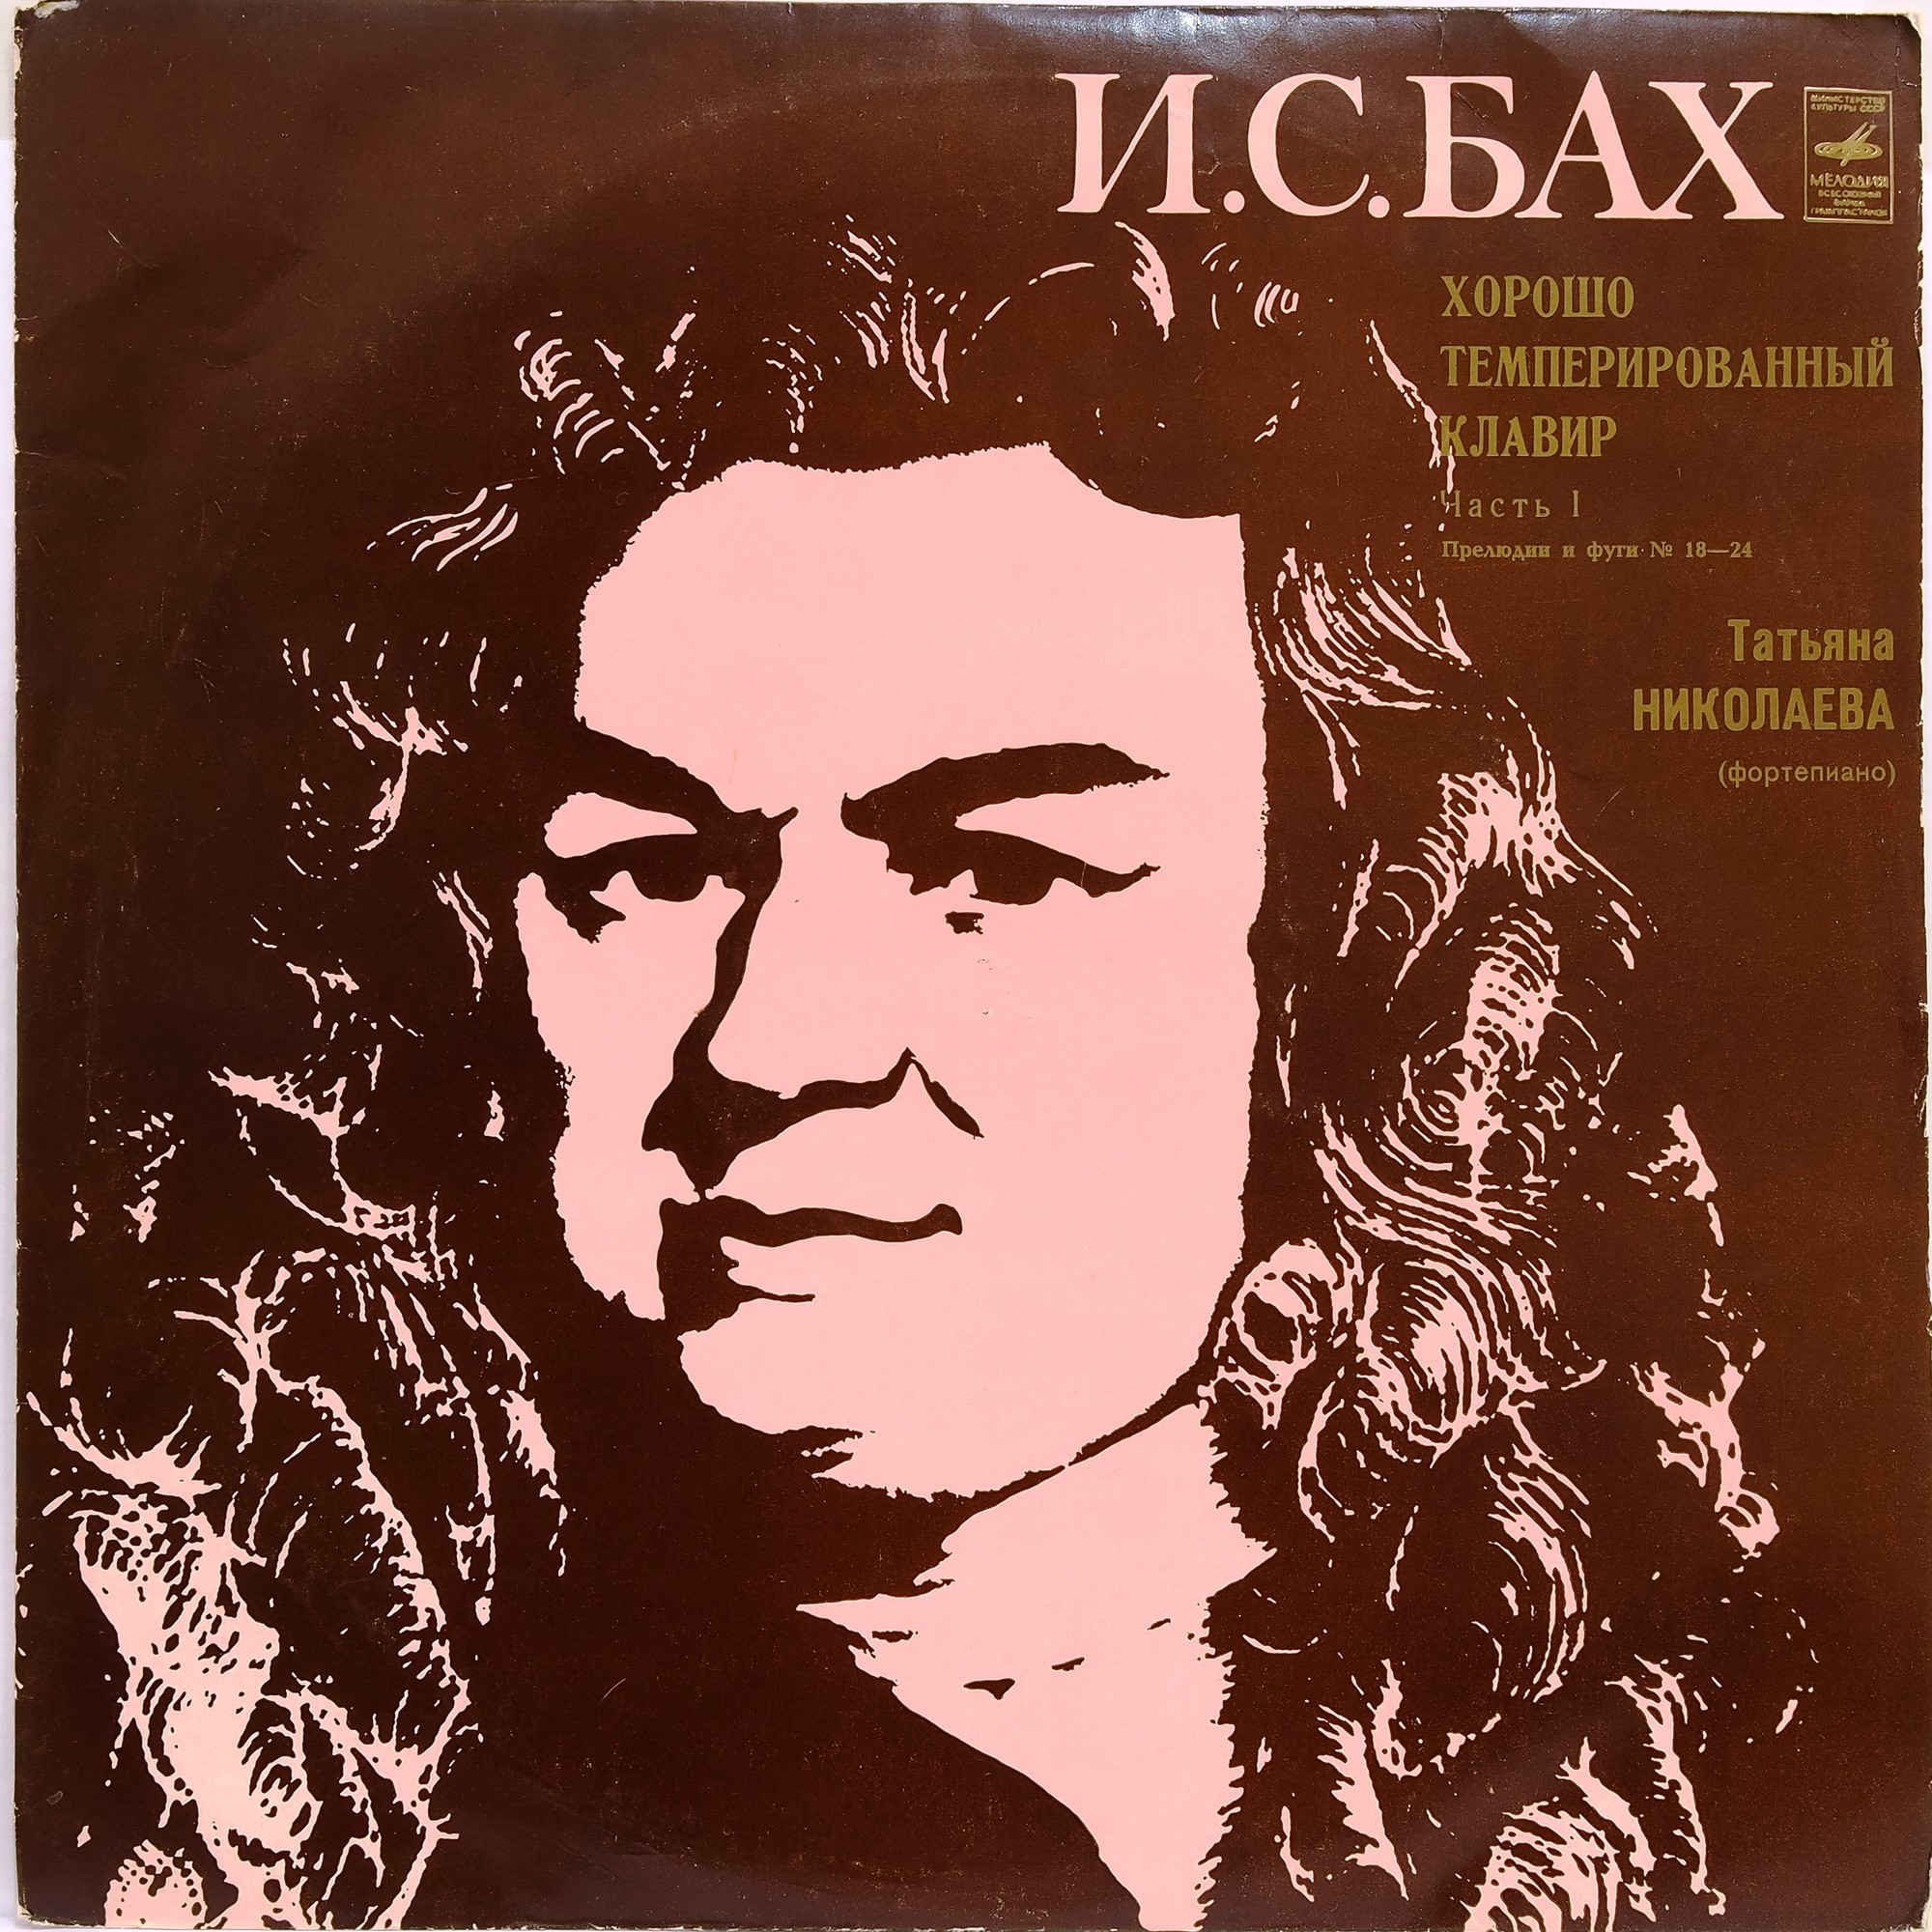 И.С. БАХ (1685-1750) "Хорошо темперированный клавир", часть I: Прелюдии и фуги №18-24 (Т. Николаева, ф-но)